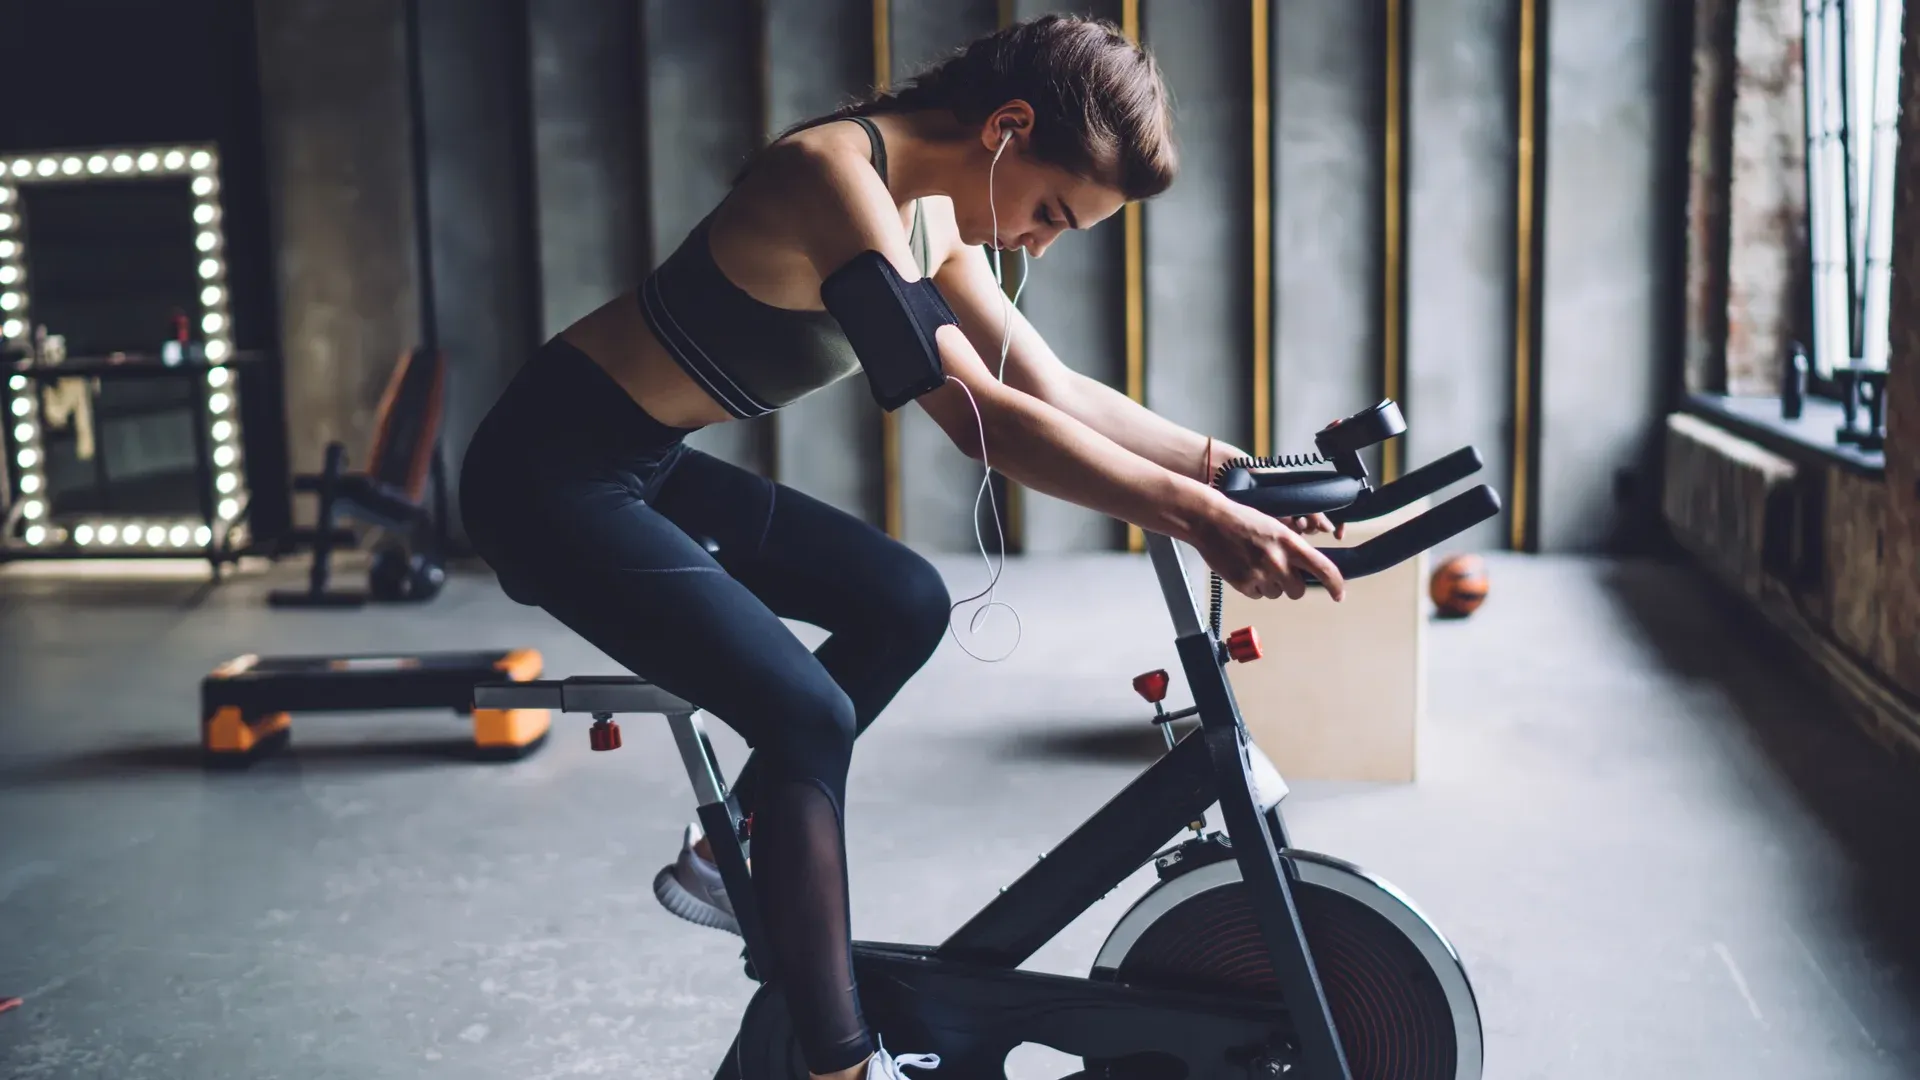 Mulher pratica exercício cardio na bicicleta de spinning